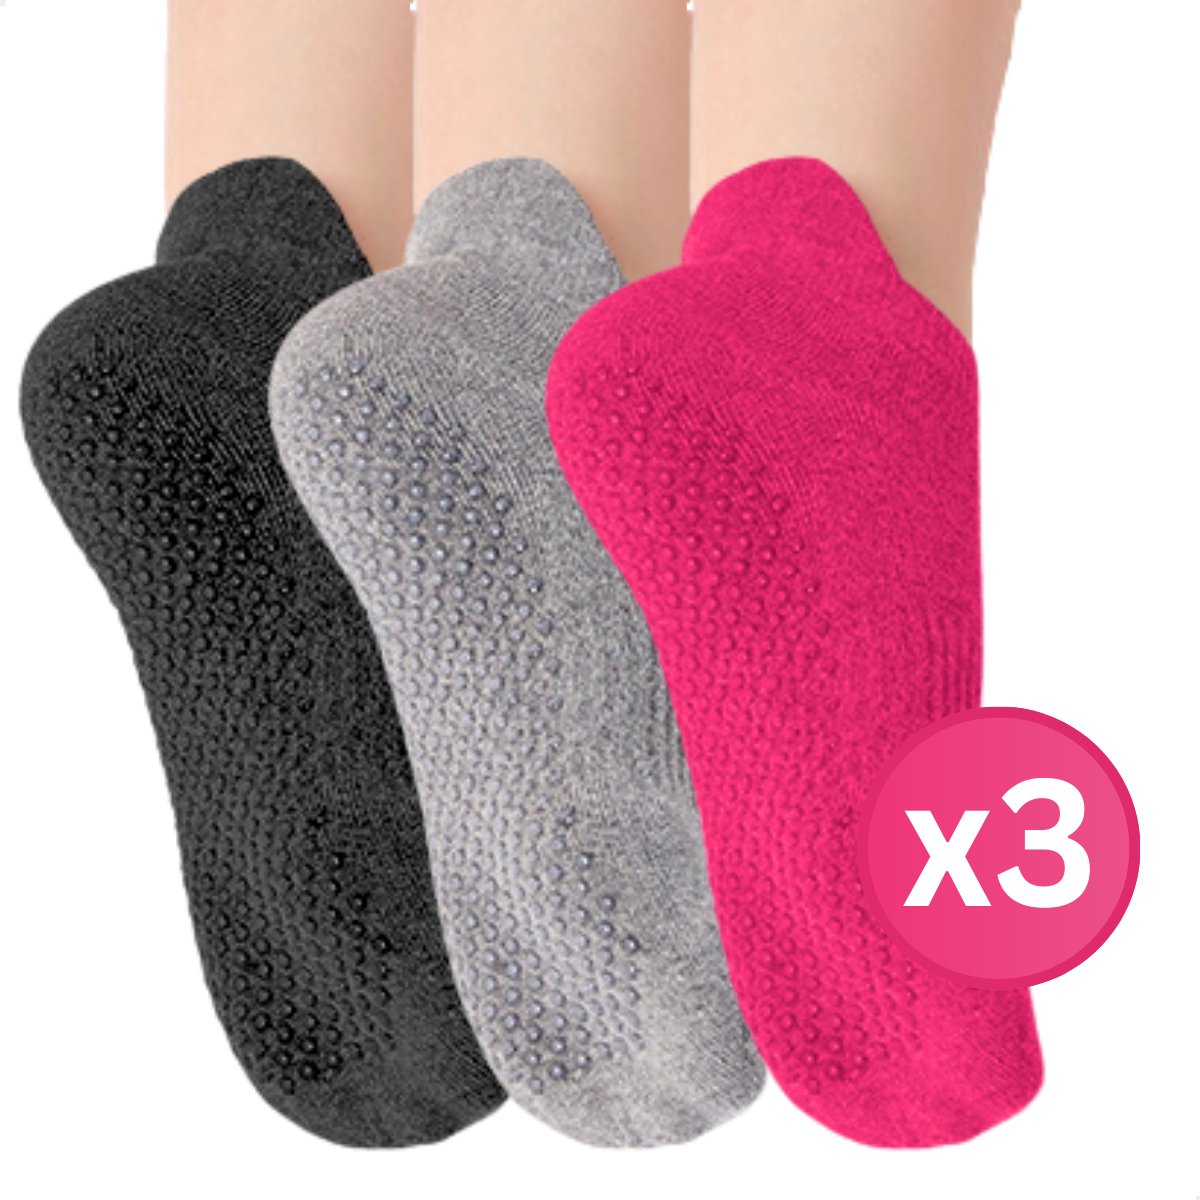 RENALUX - Yoga Sokken Antislip Dames - Antislip Sokken Dames - Pilates Sokken - Anti Slip Sokken - Huissokken met Antislip Dames - Fuchsia, Grijs & Zwart - Set van Maarliefst 3 Paar